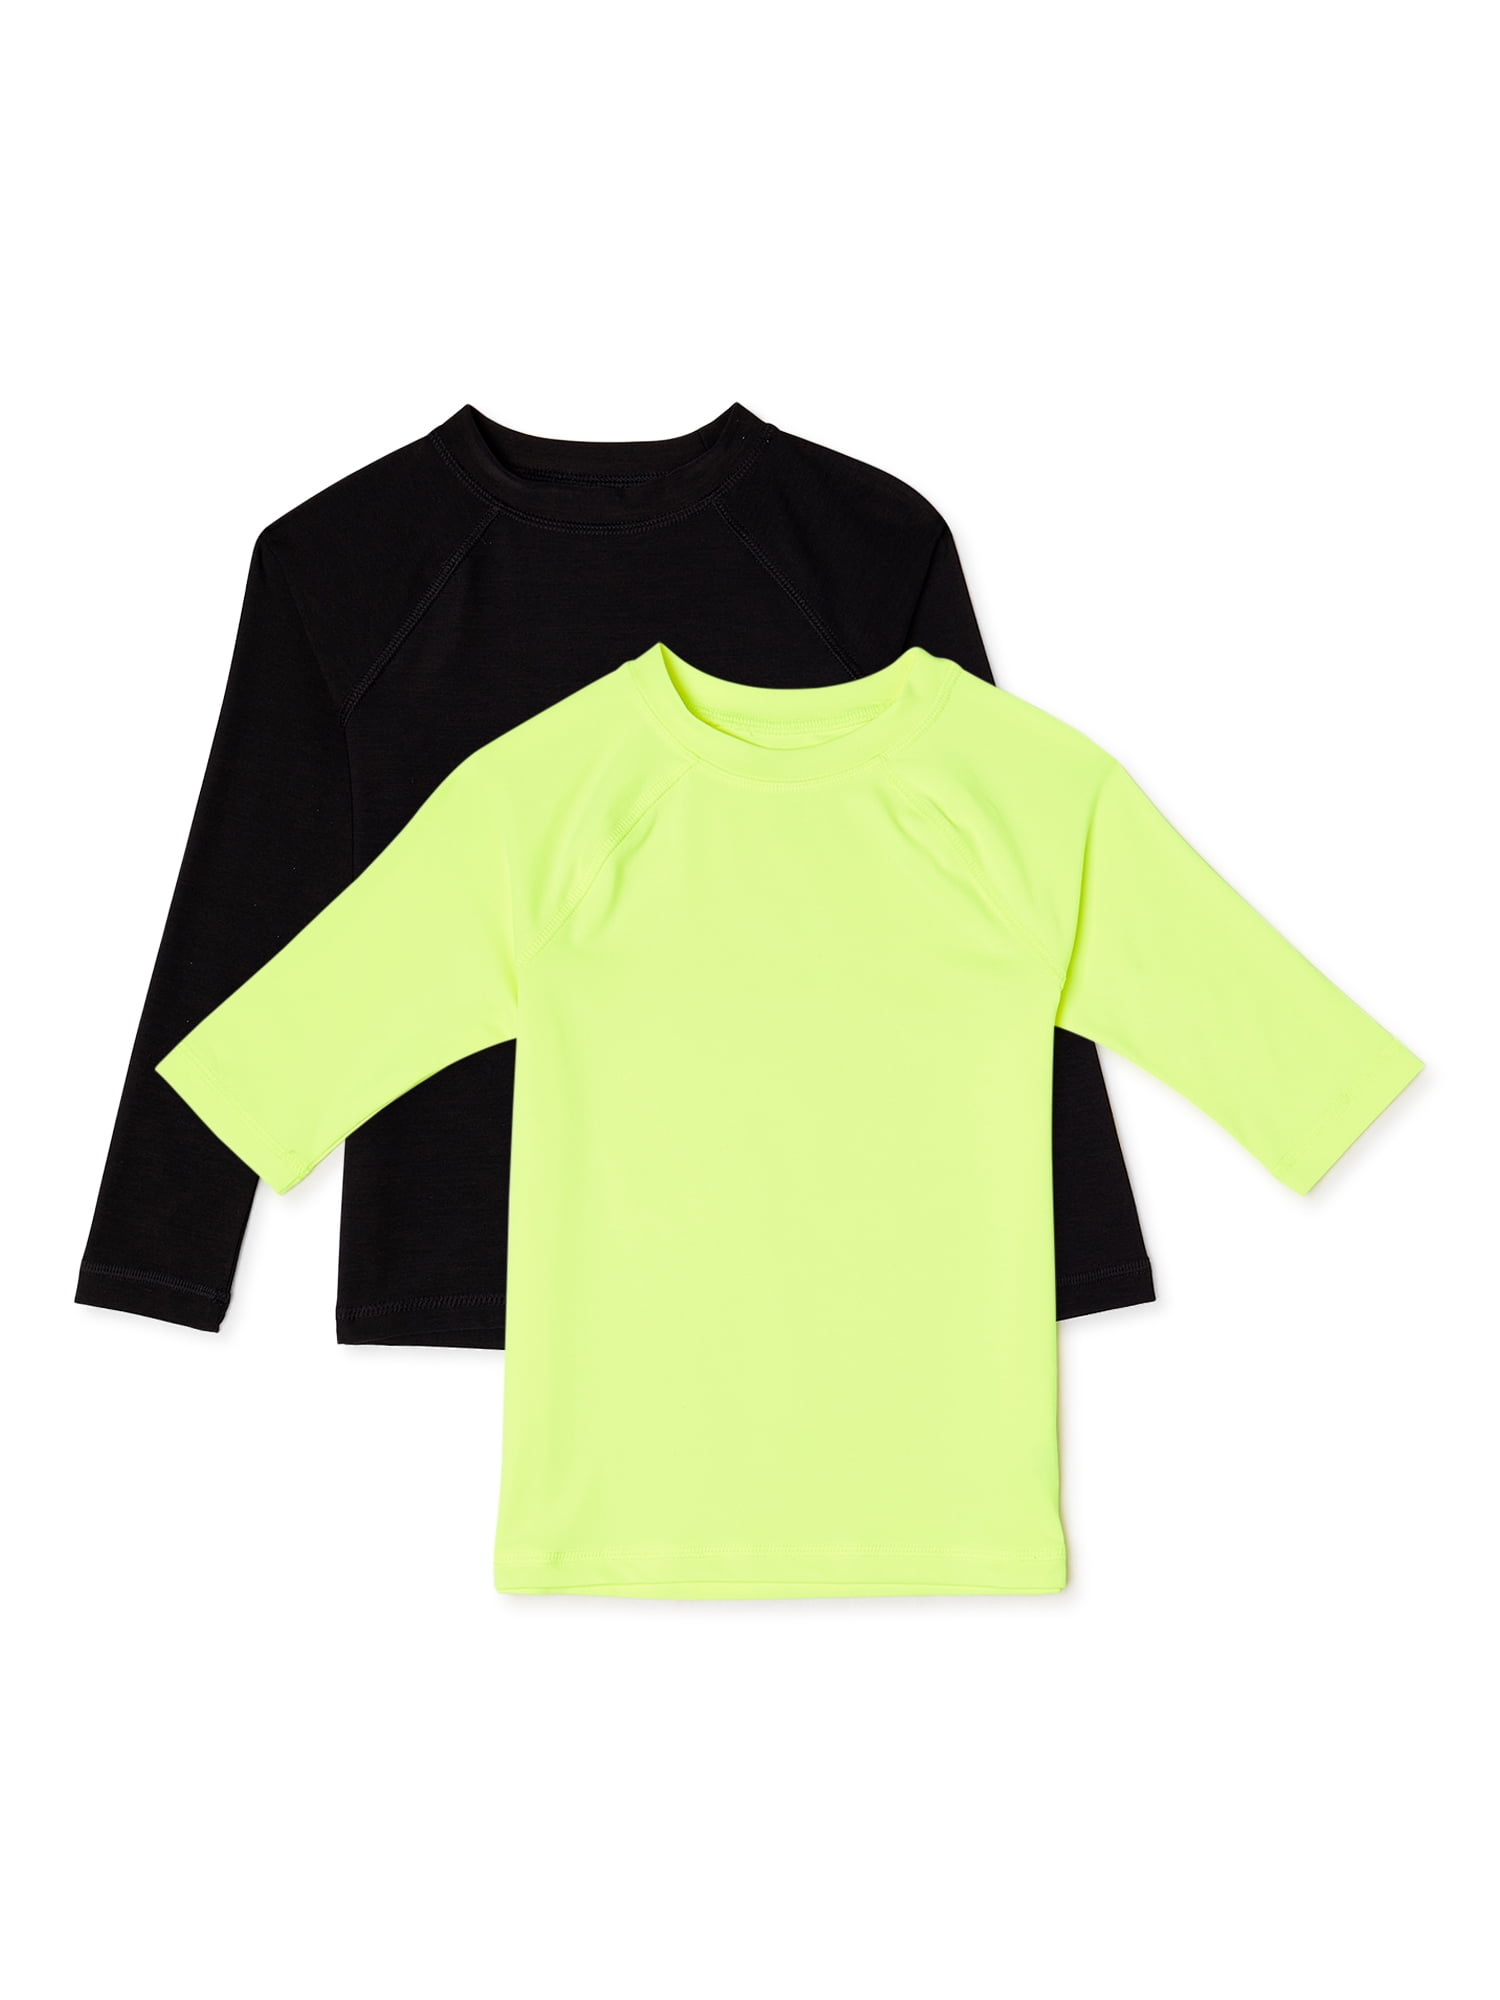 Size 14/16 Lime/Black Jachs Boys UPF 50 Sun Protection Rashguard Swim Shirt